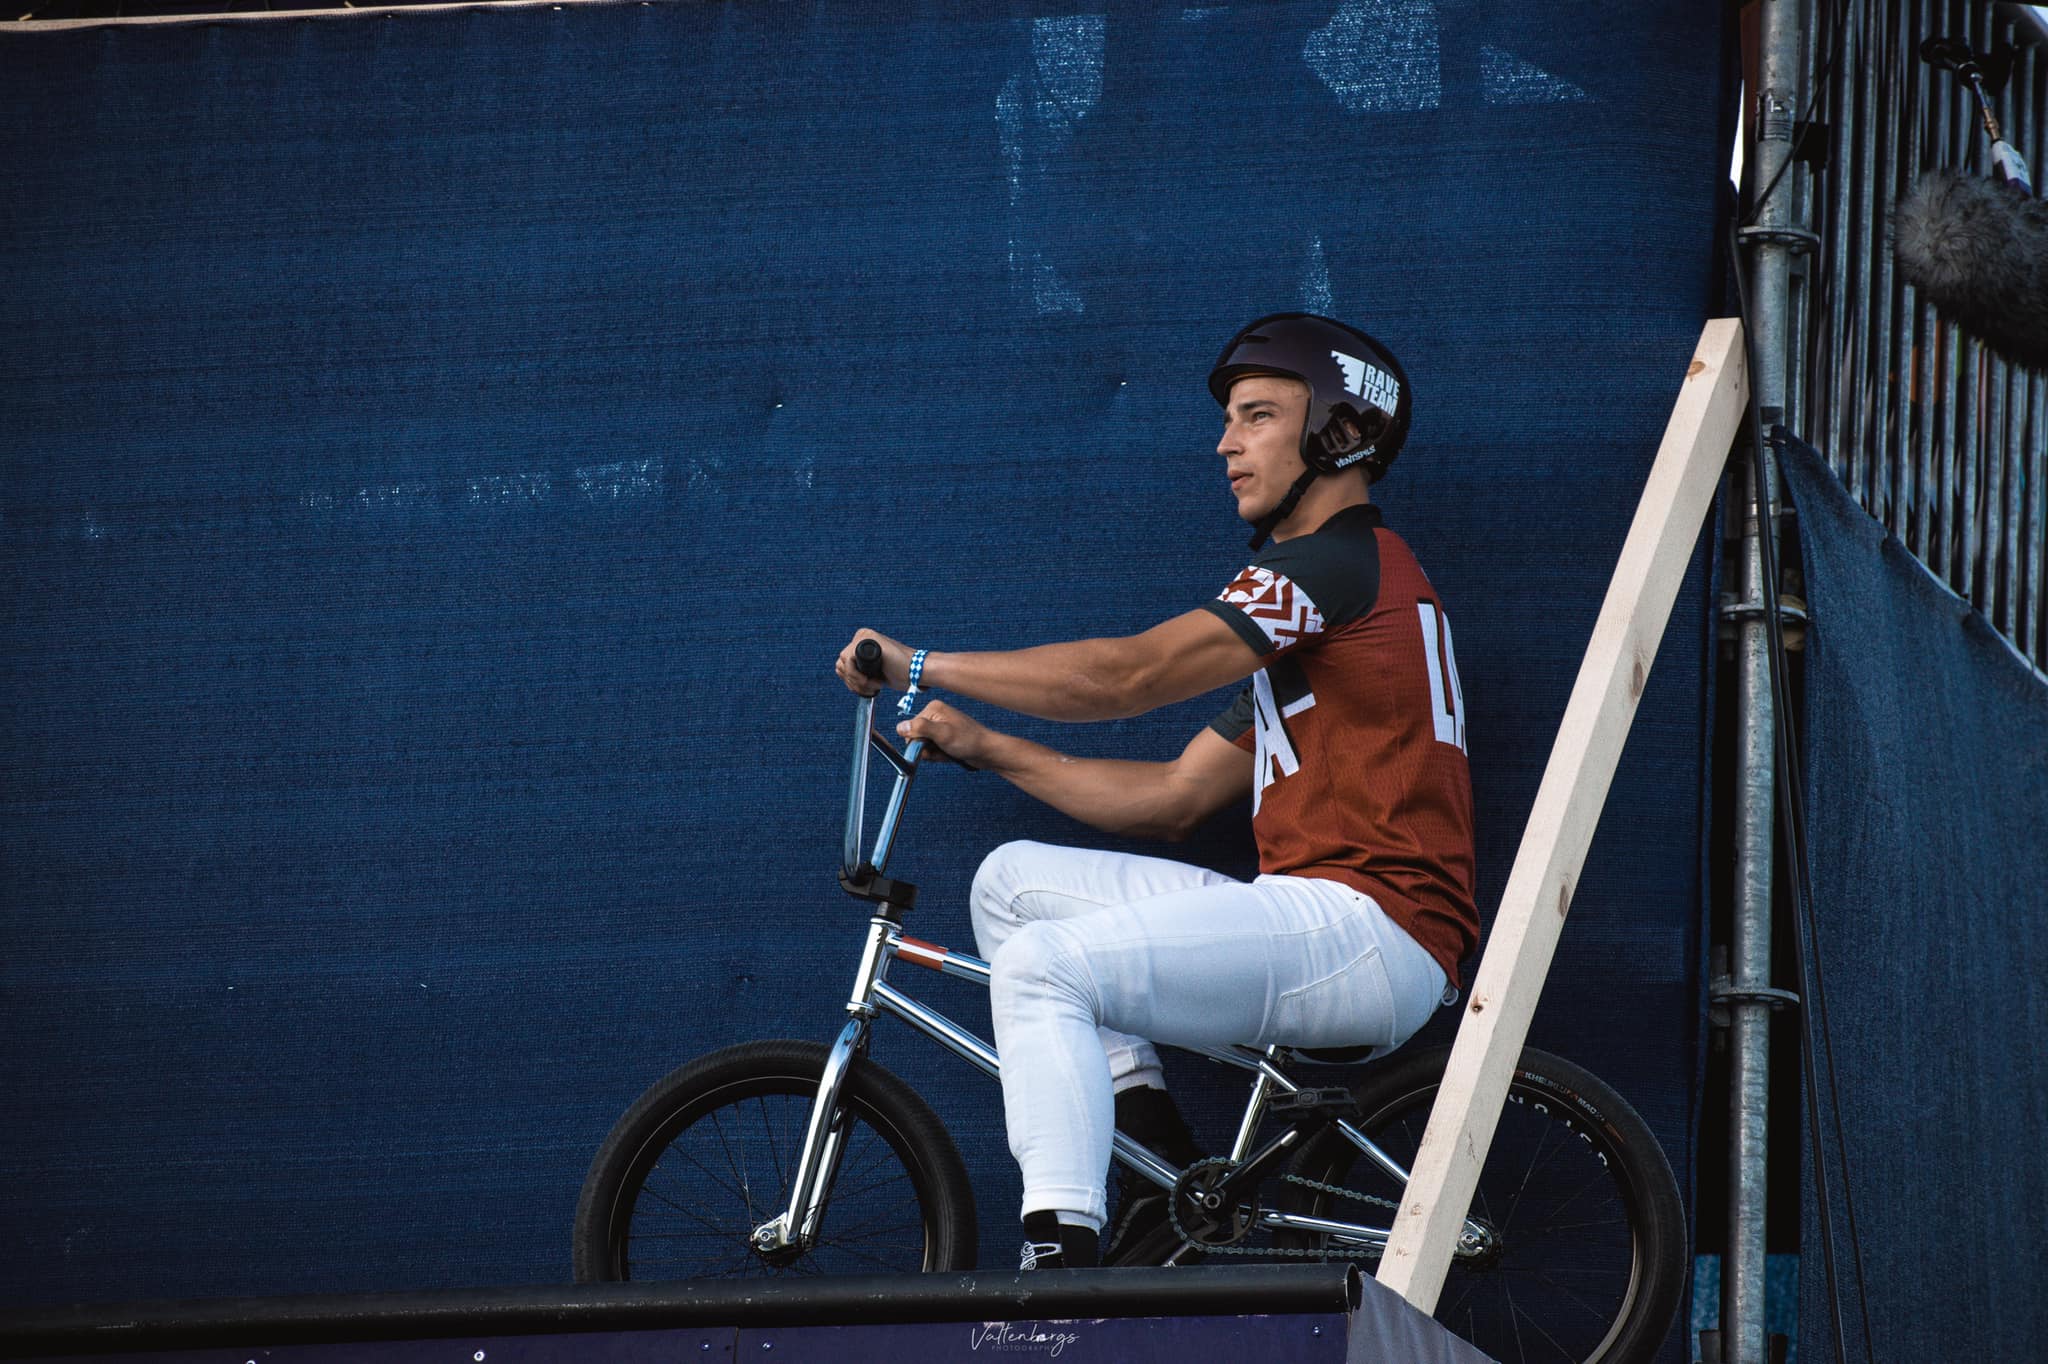 Zēbolds Pasaules kausā BMX frīstailā ieņem 19. vietu pusfinālā